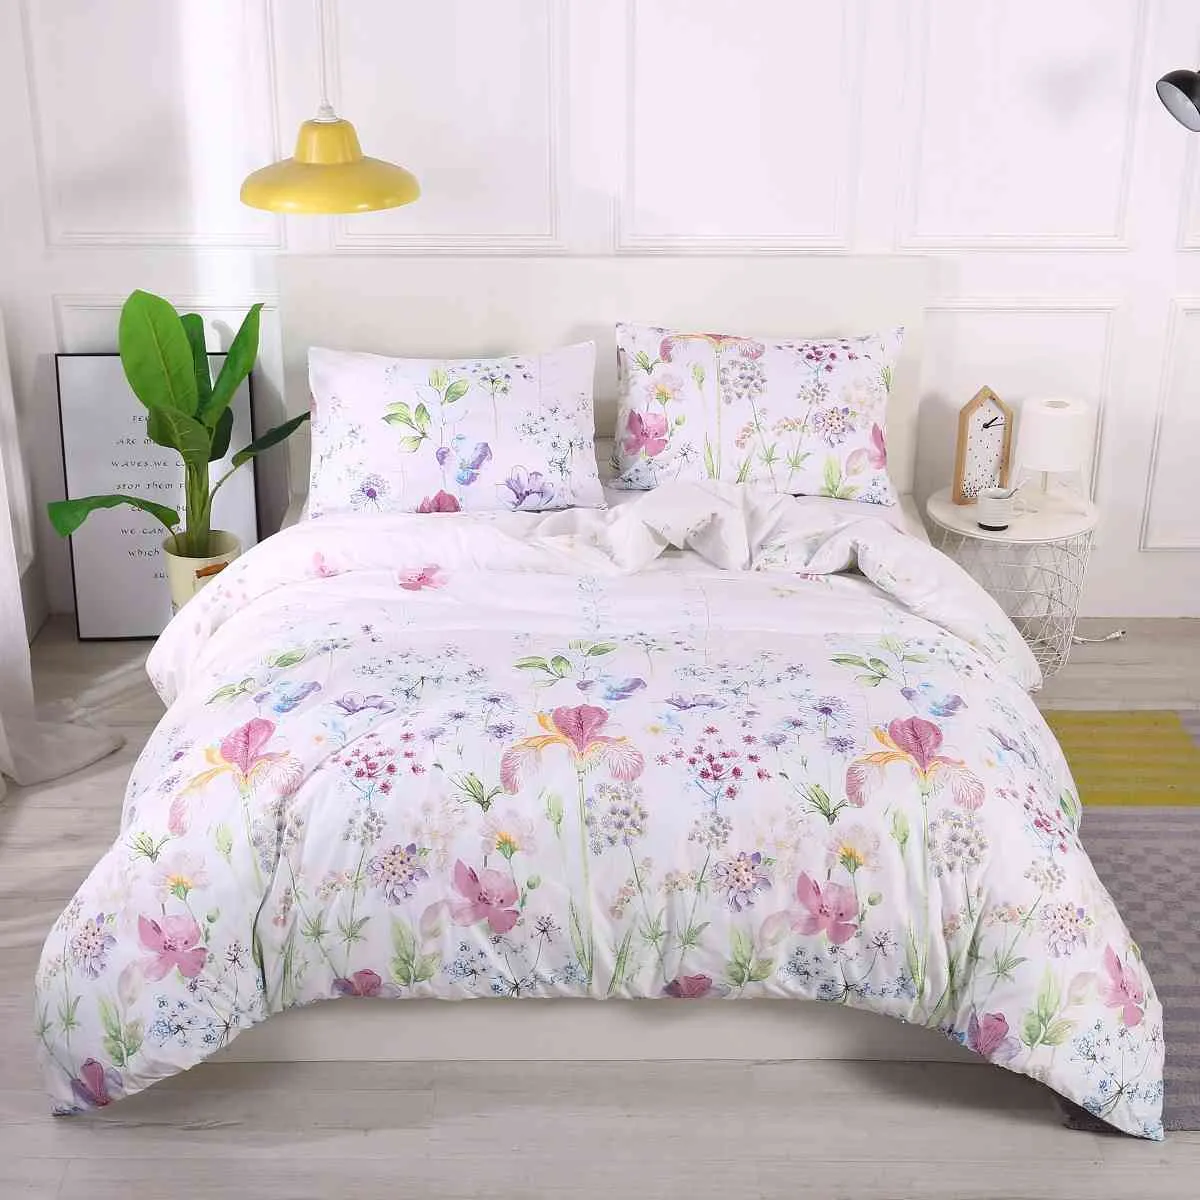 Цветочная классическая современная одеяла и наволочка Красивая стиль постельного белья Текстильная кровать Не простыня